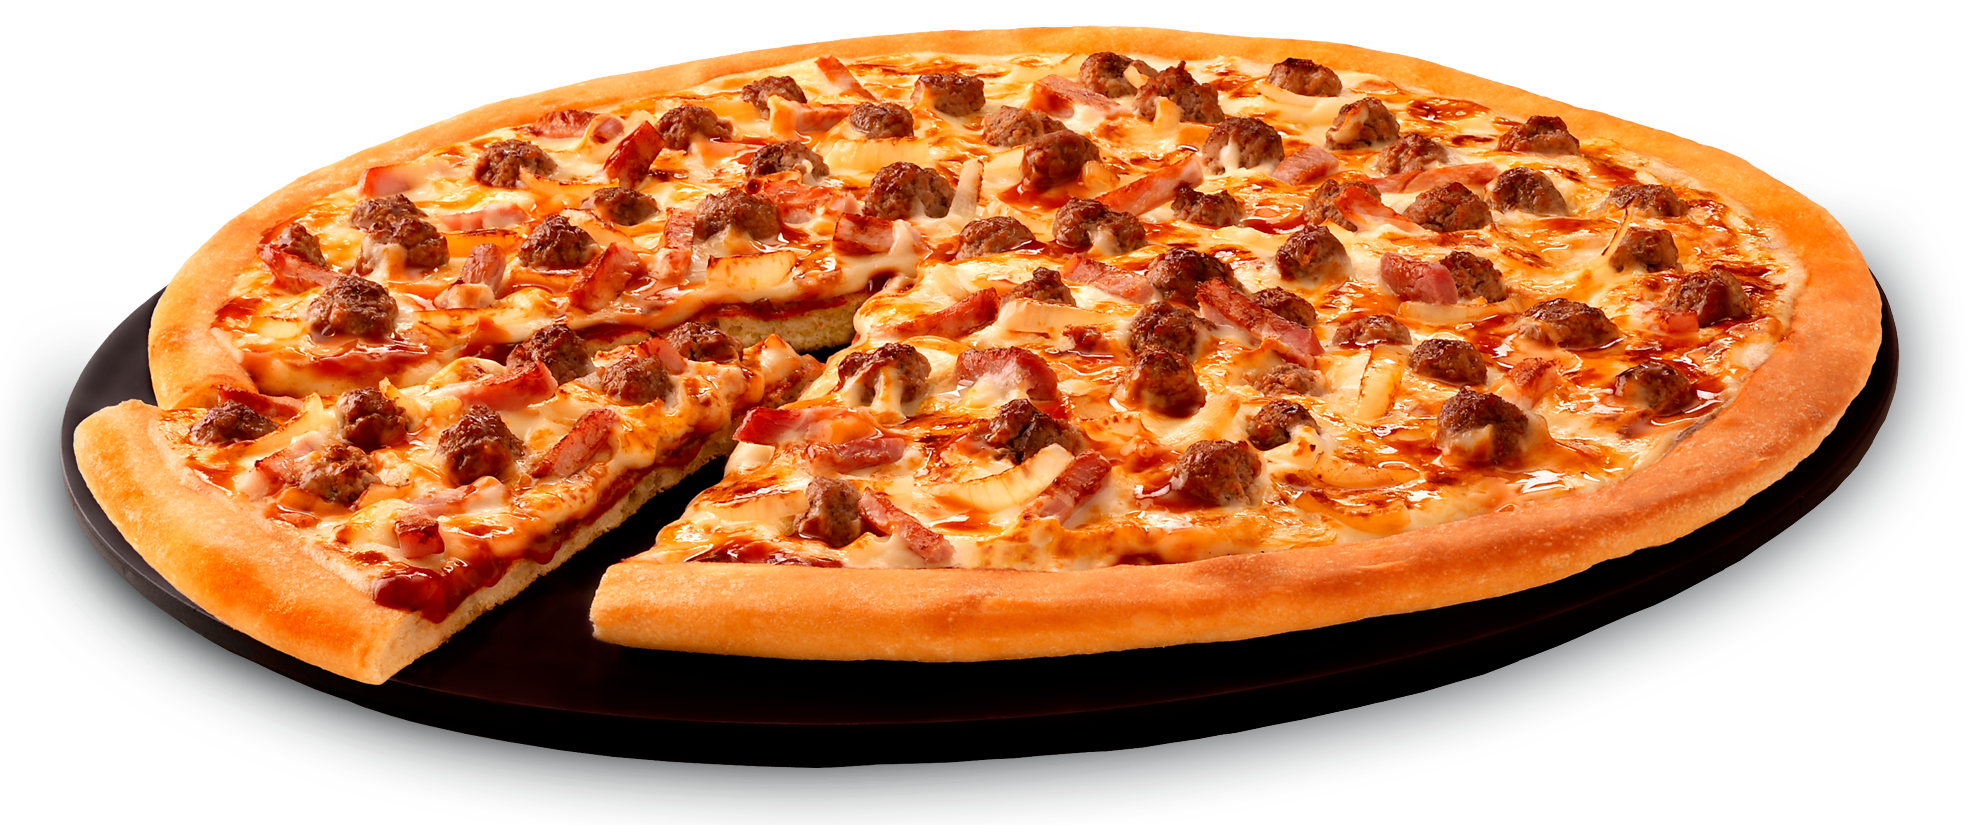 delicious pizza, Hd, Food, Fa